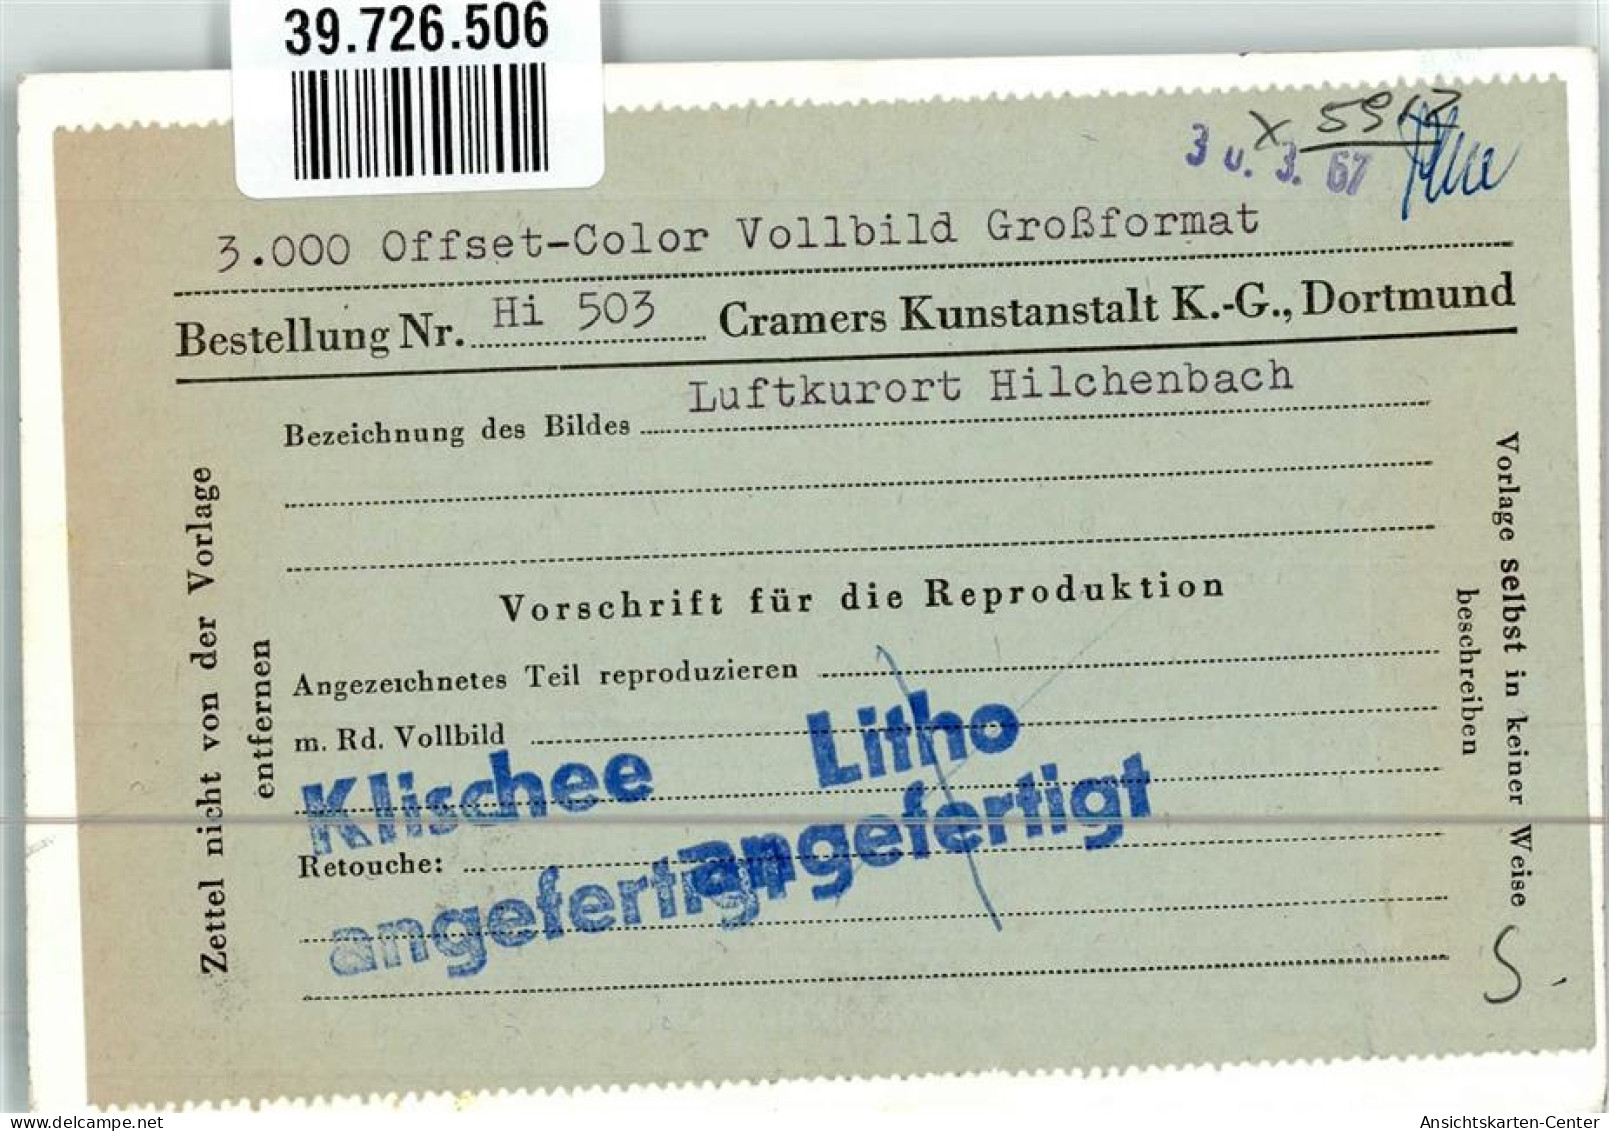 39726506 - Hilchenbach , Siegerland - Hilchenbach